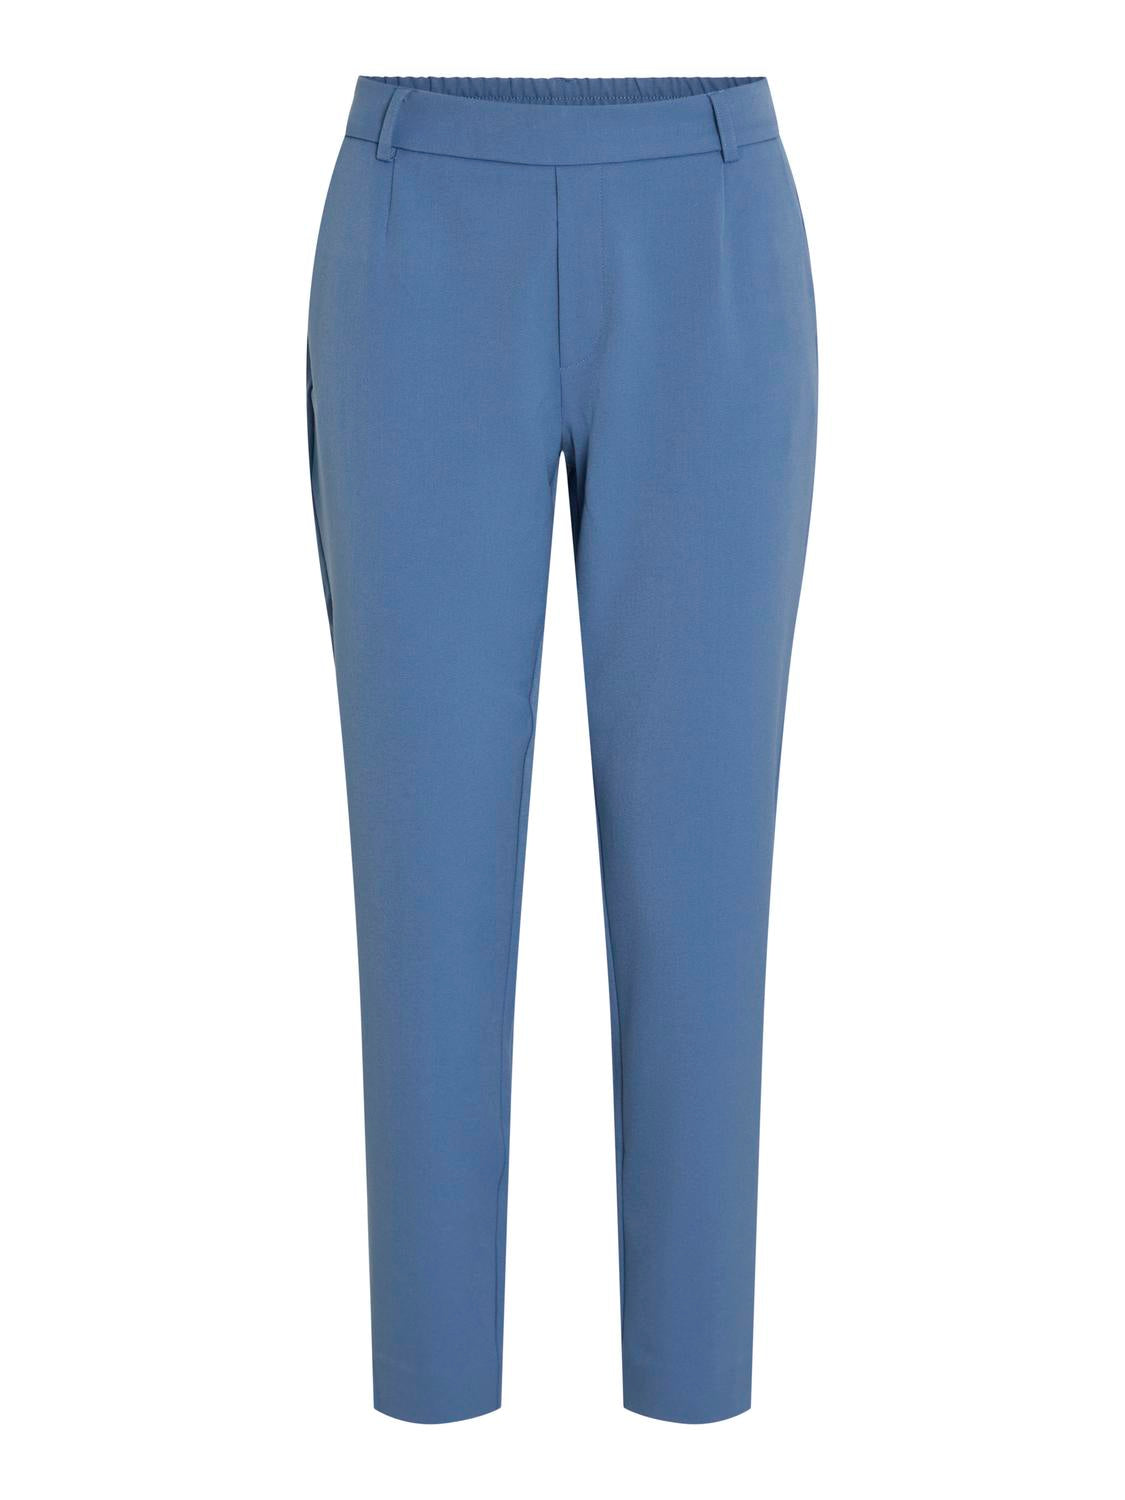 VIVARONE Pants - Coronet Blue